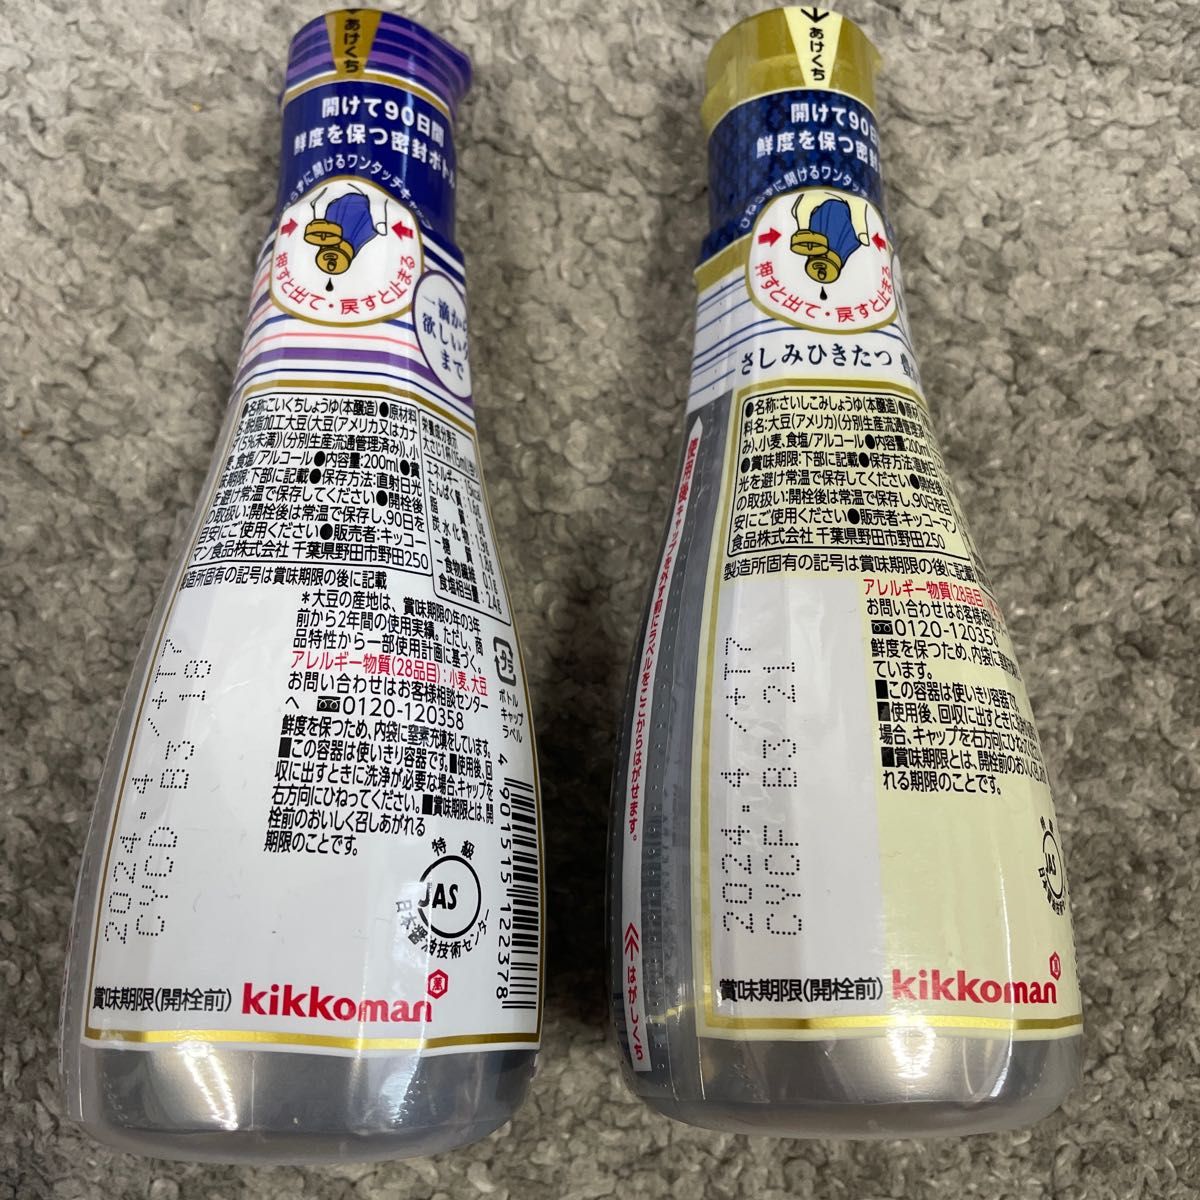 鎌田醤油、キッコーマン 5点セット